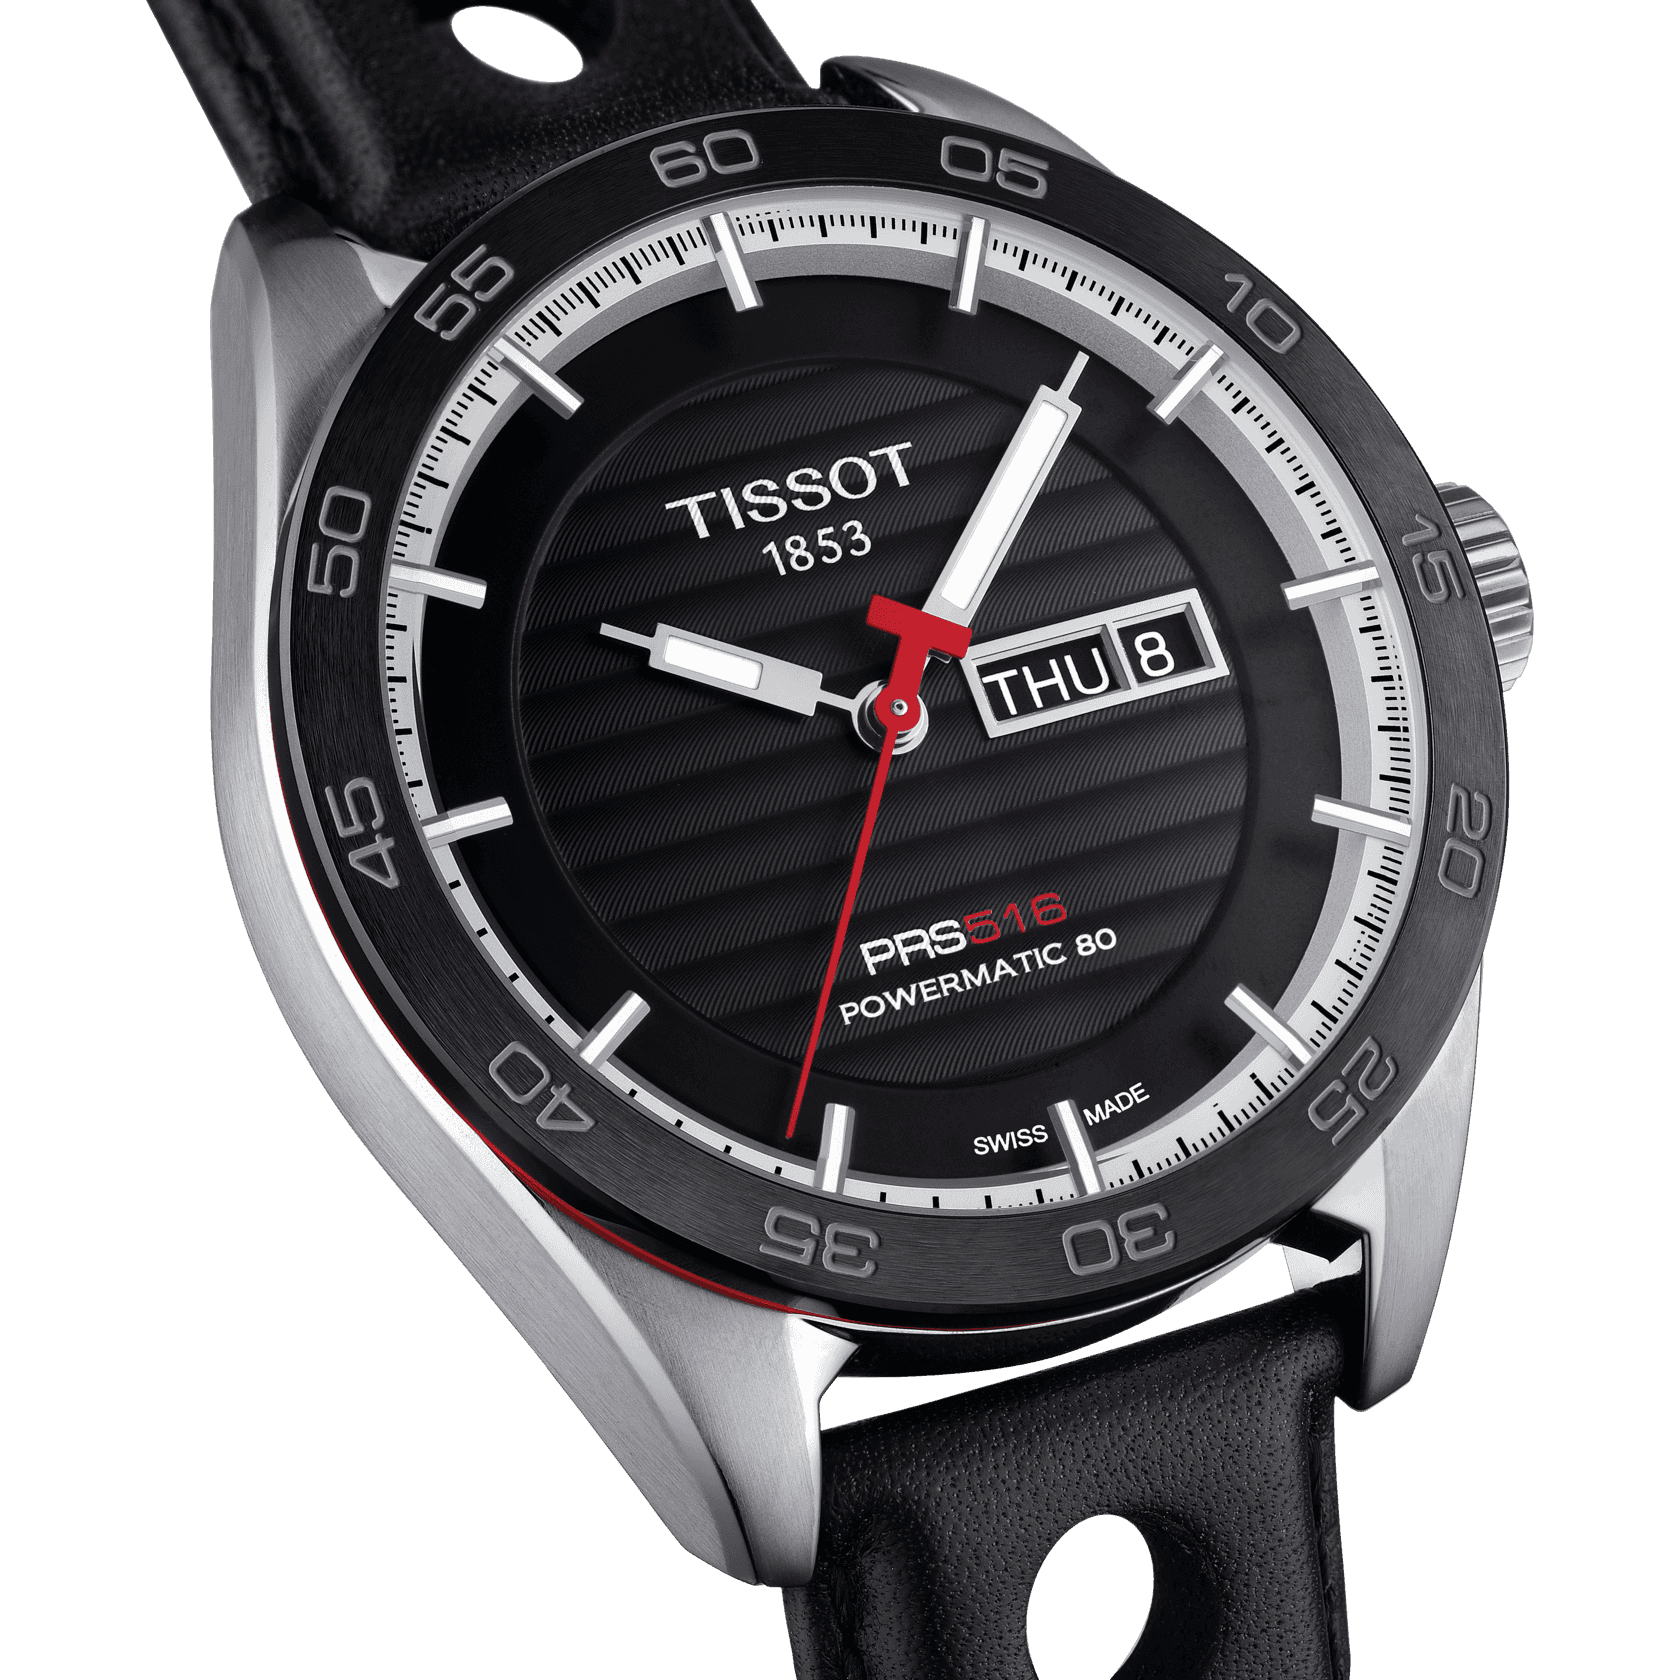 Replica Movado Watches For Men